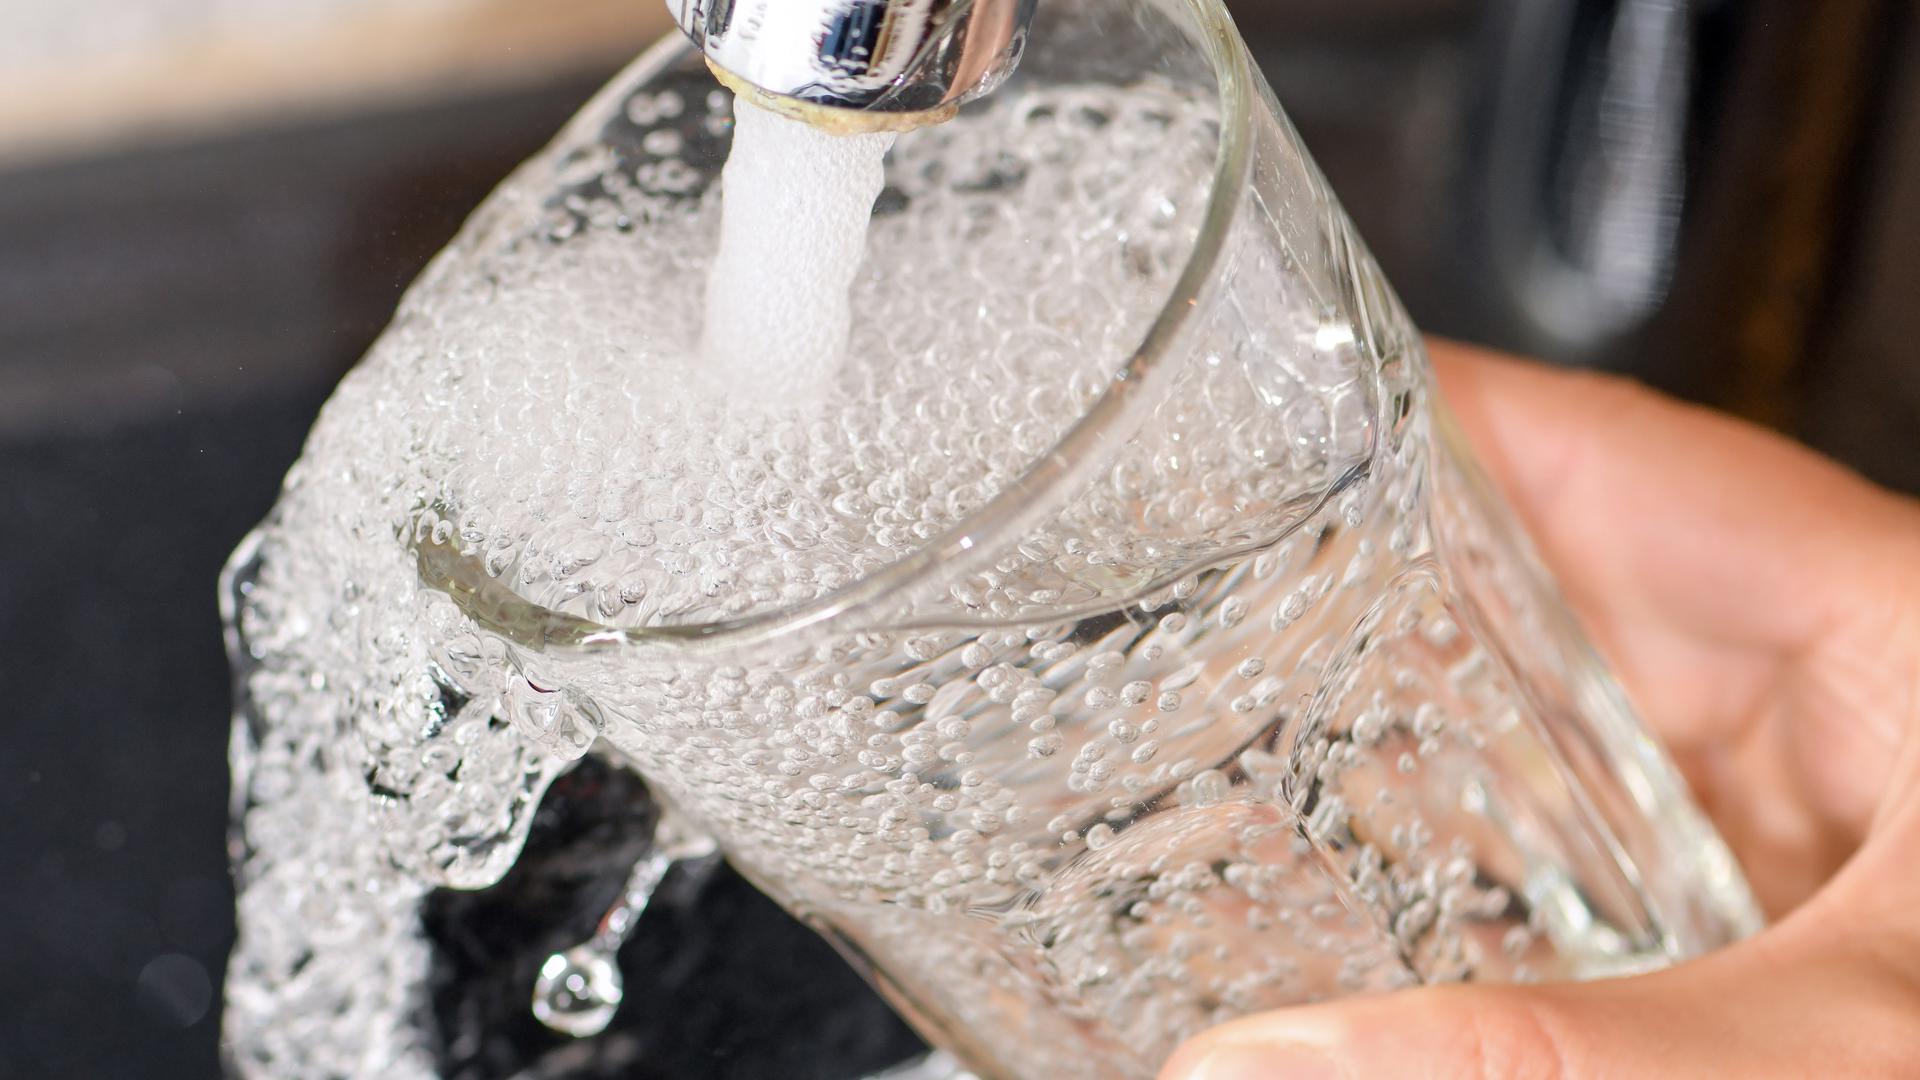 Am Wasserhahn in einer Küche wird ein Trinkglas mit Leitungswasser befüllt. 